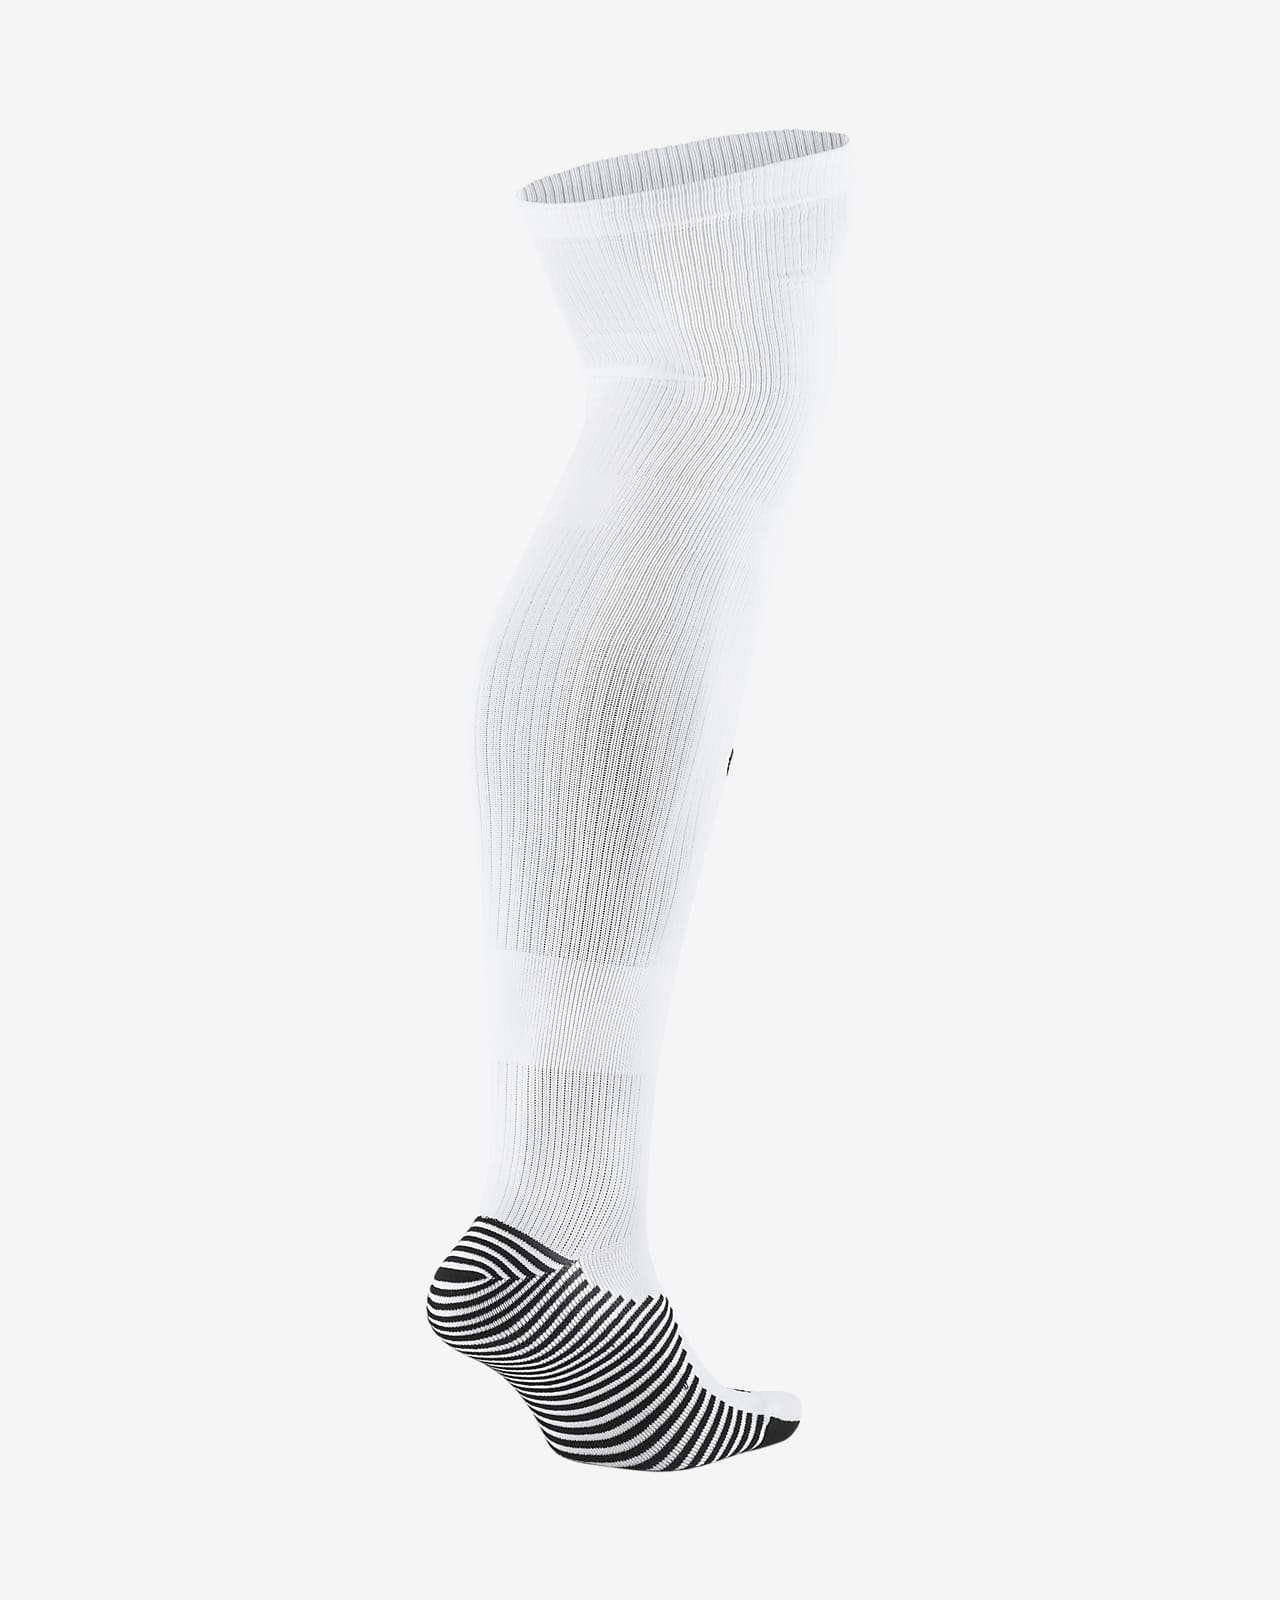 nike over the knee soccer socks